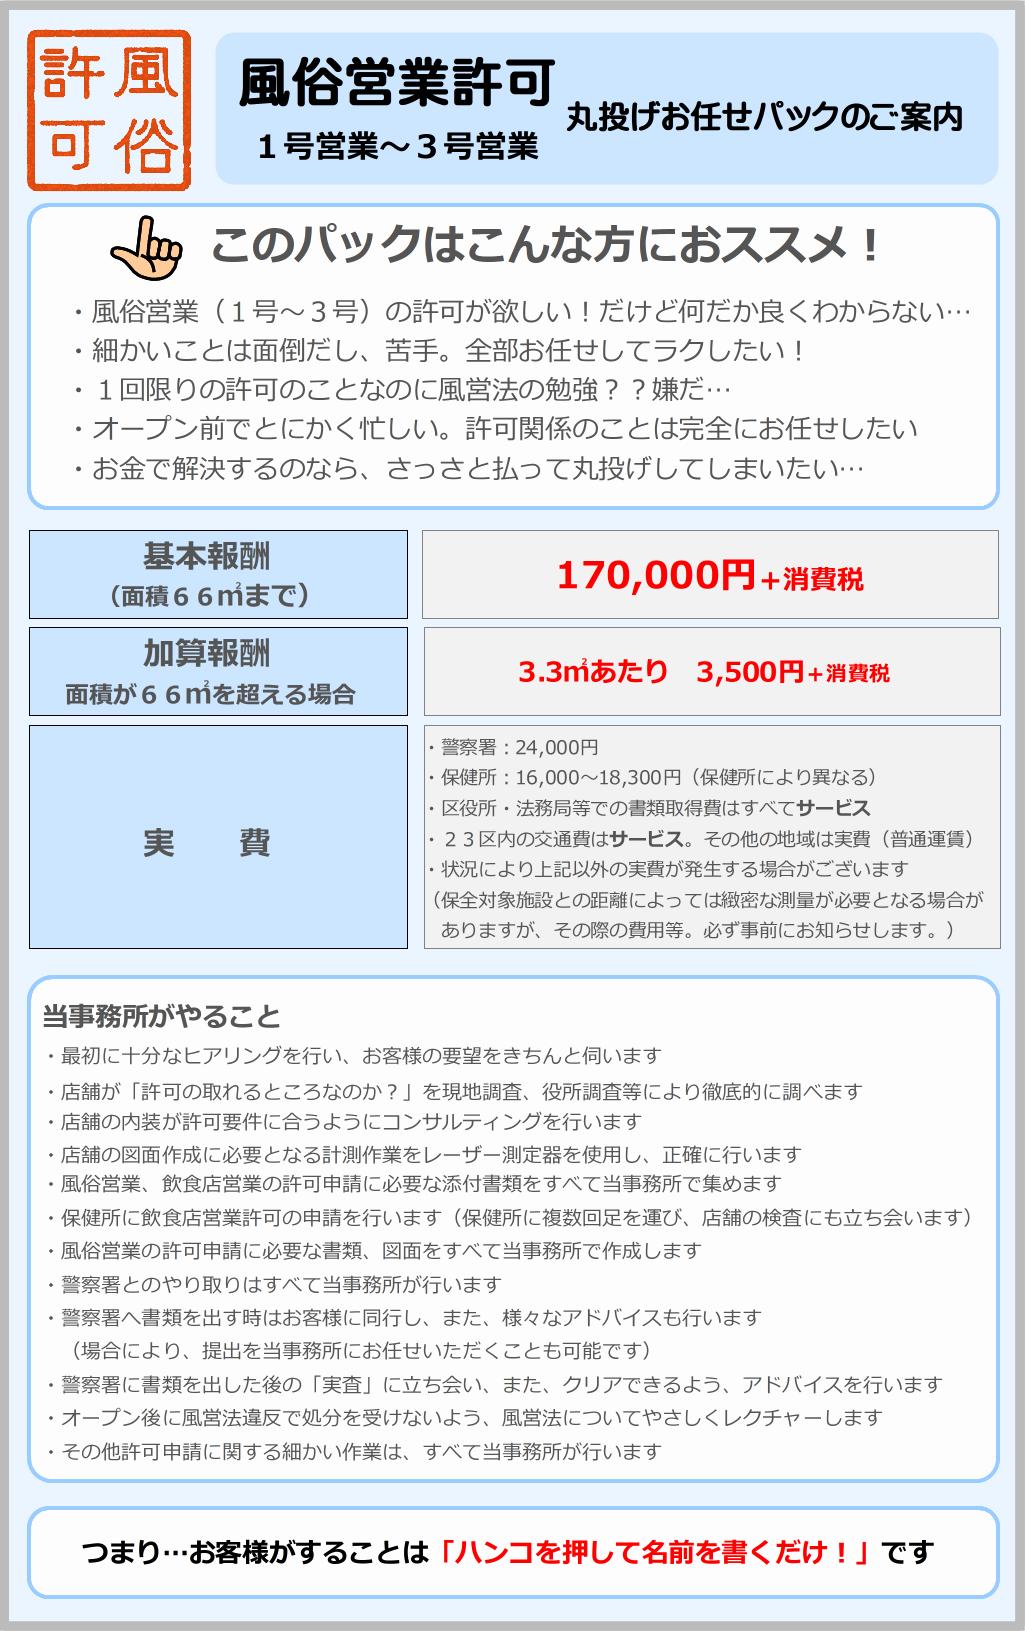 東京都内の風俗営業許可・風営法手続きが専門の富岡行政法務事務所・風営法の手続き相談センターでは、風俗営業（１号～３号：キャバクラ、ホストクラブ等）の手続きを、お得な価格で提供しています。新規に許可を取る際の基本報酬は170,000円＋税で、広さに応じて加算報酬が加わります。